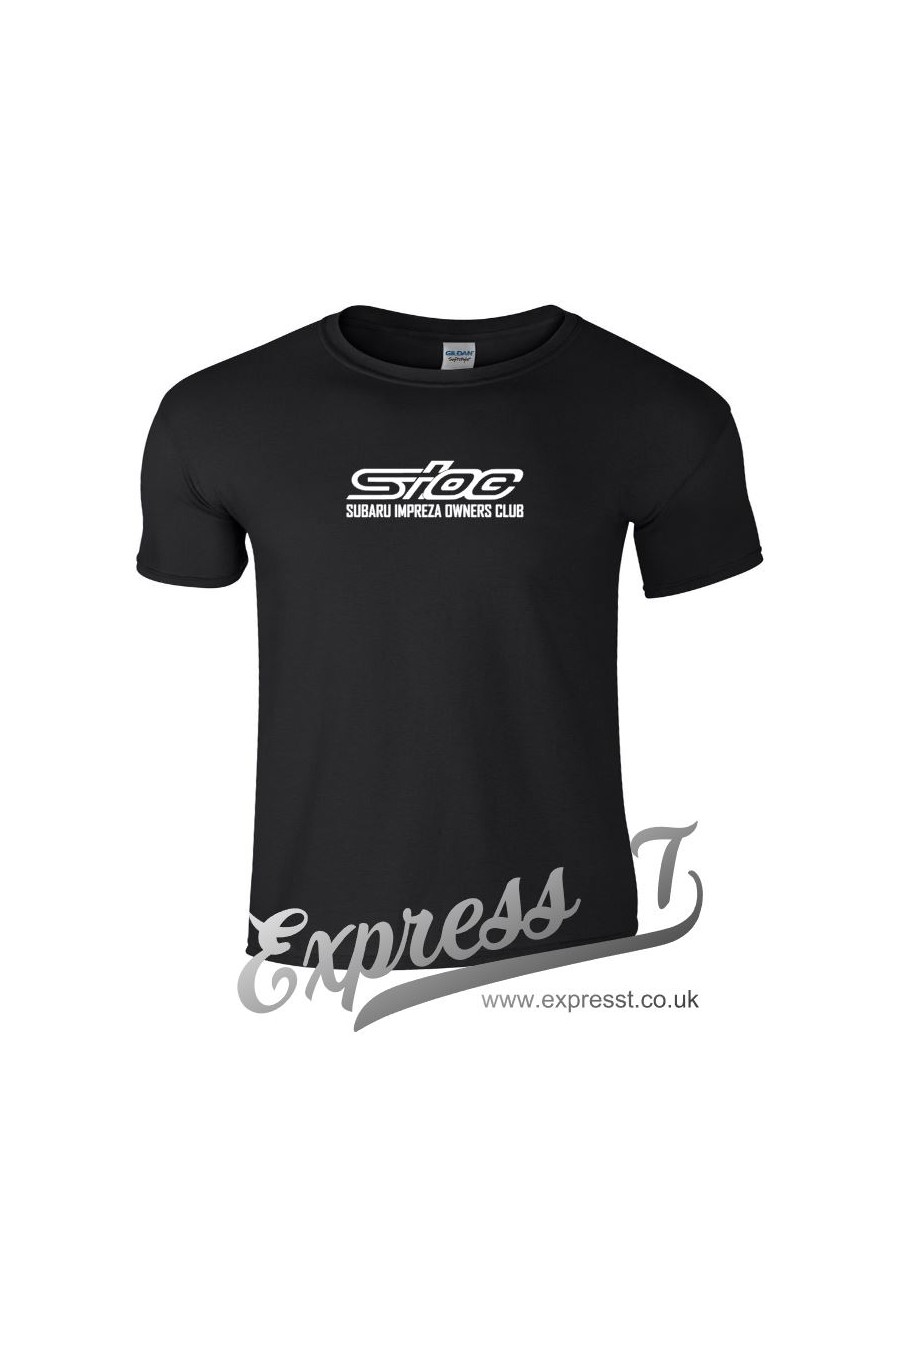 SIOC Chest Logo T Shirt